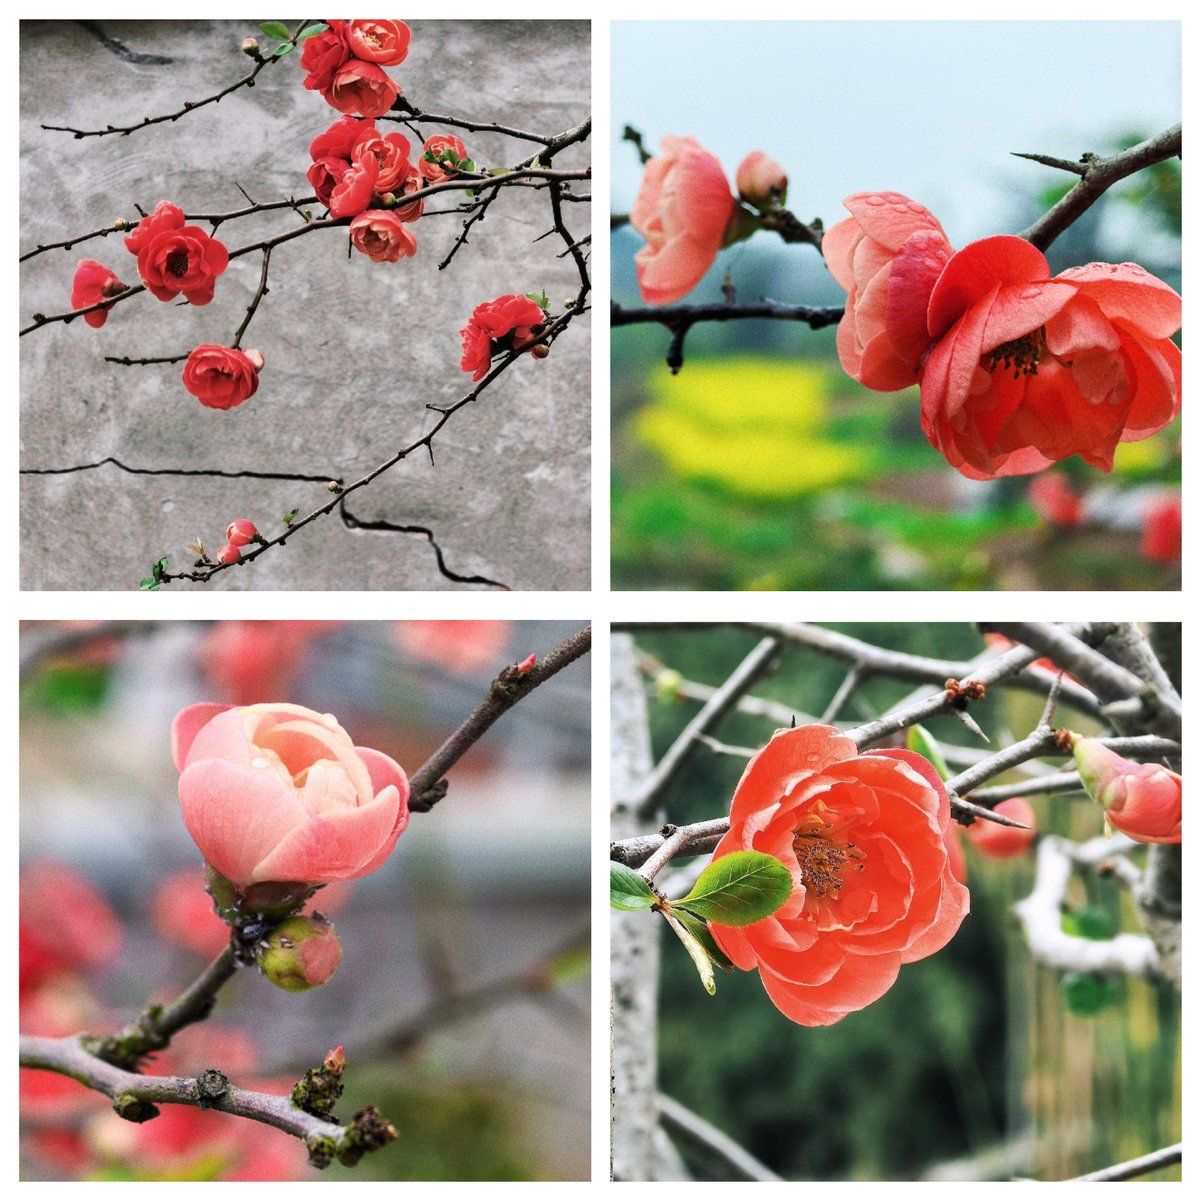 “海棠笑迎客，留步看花溪。”含苞的海棠透着浅浅的粉红色，更增添了一份柔美淡雅。